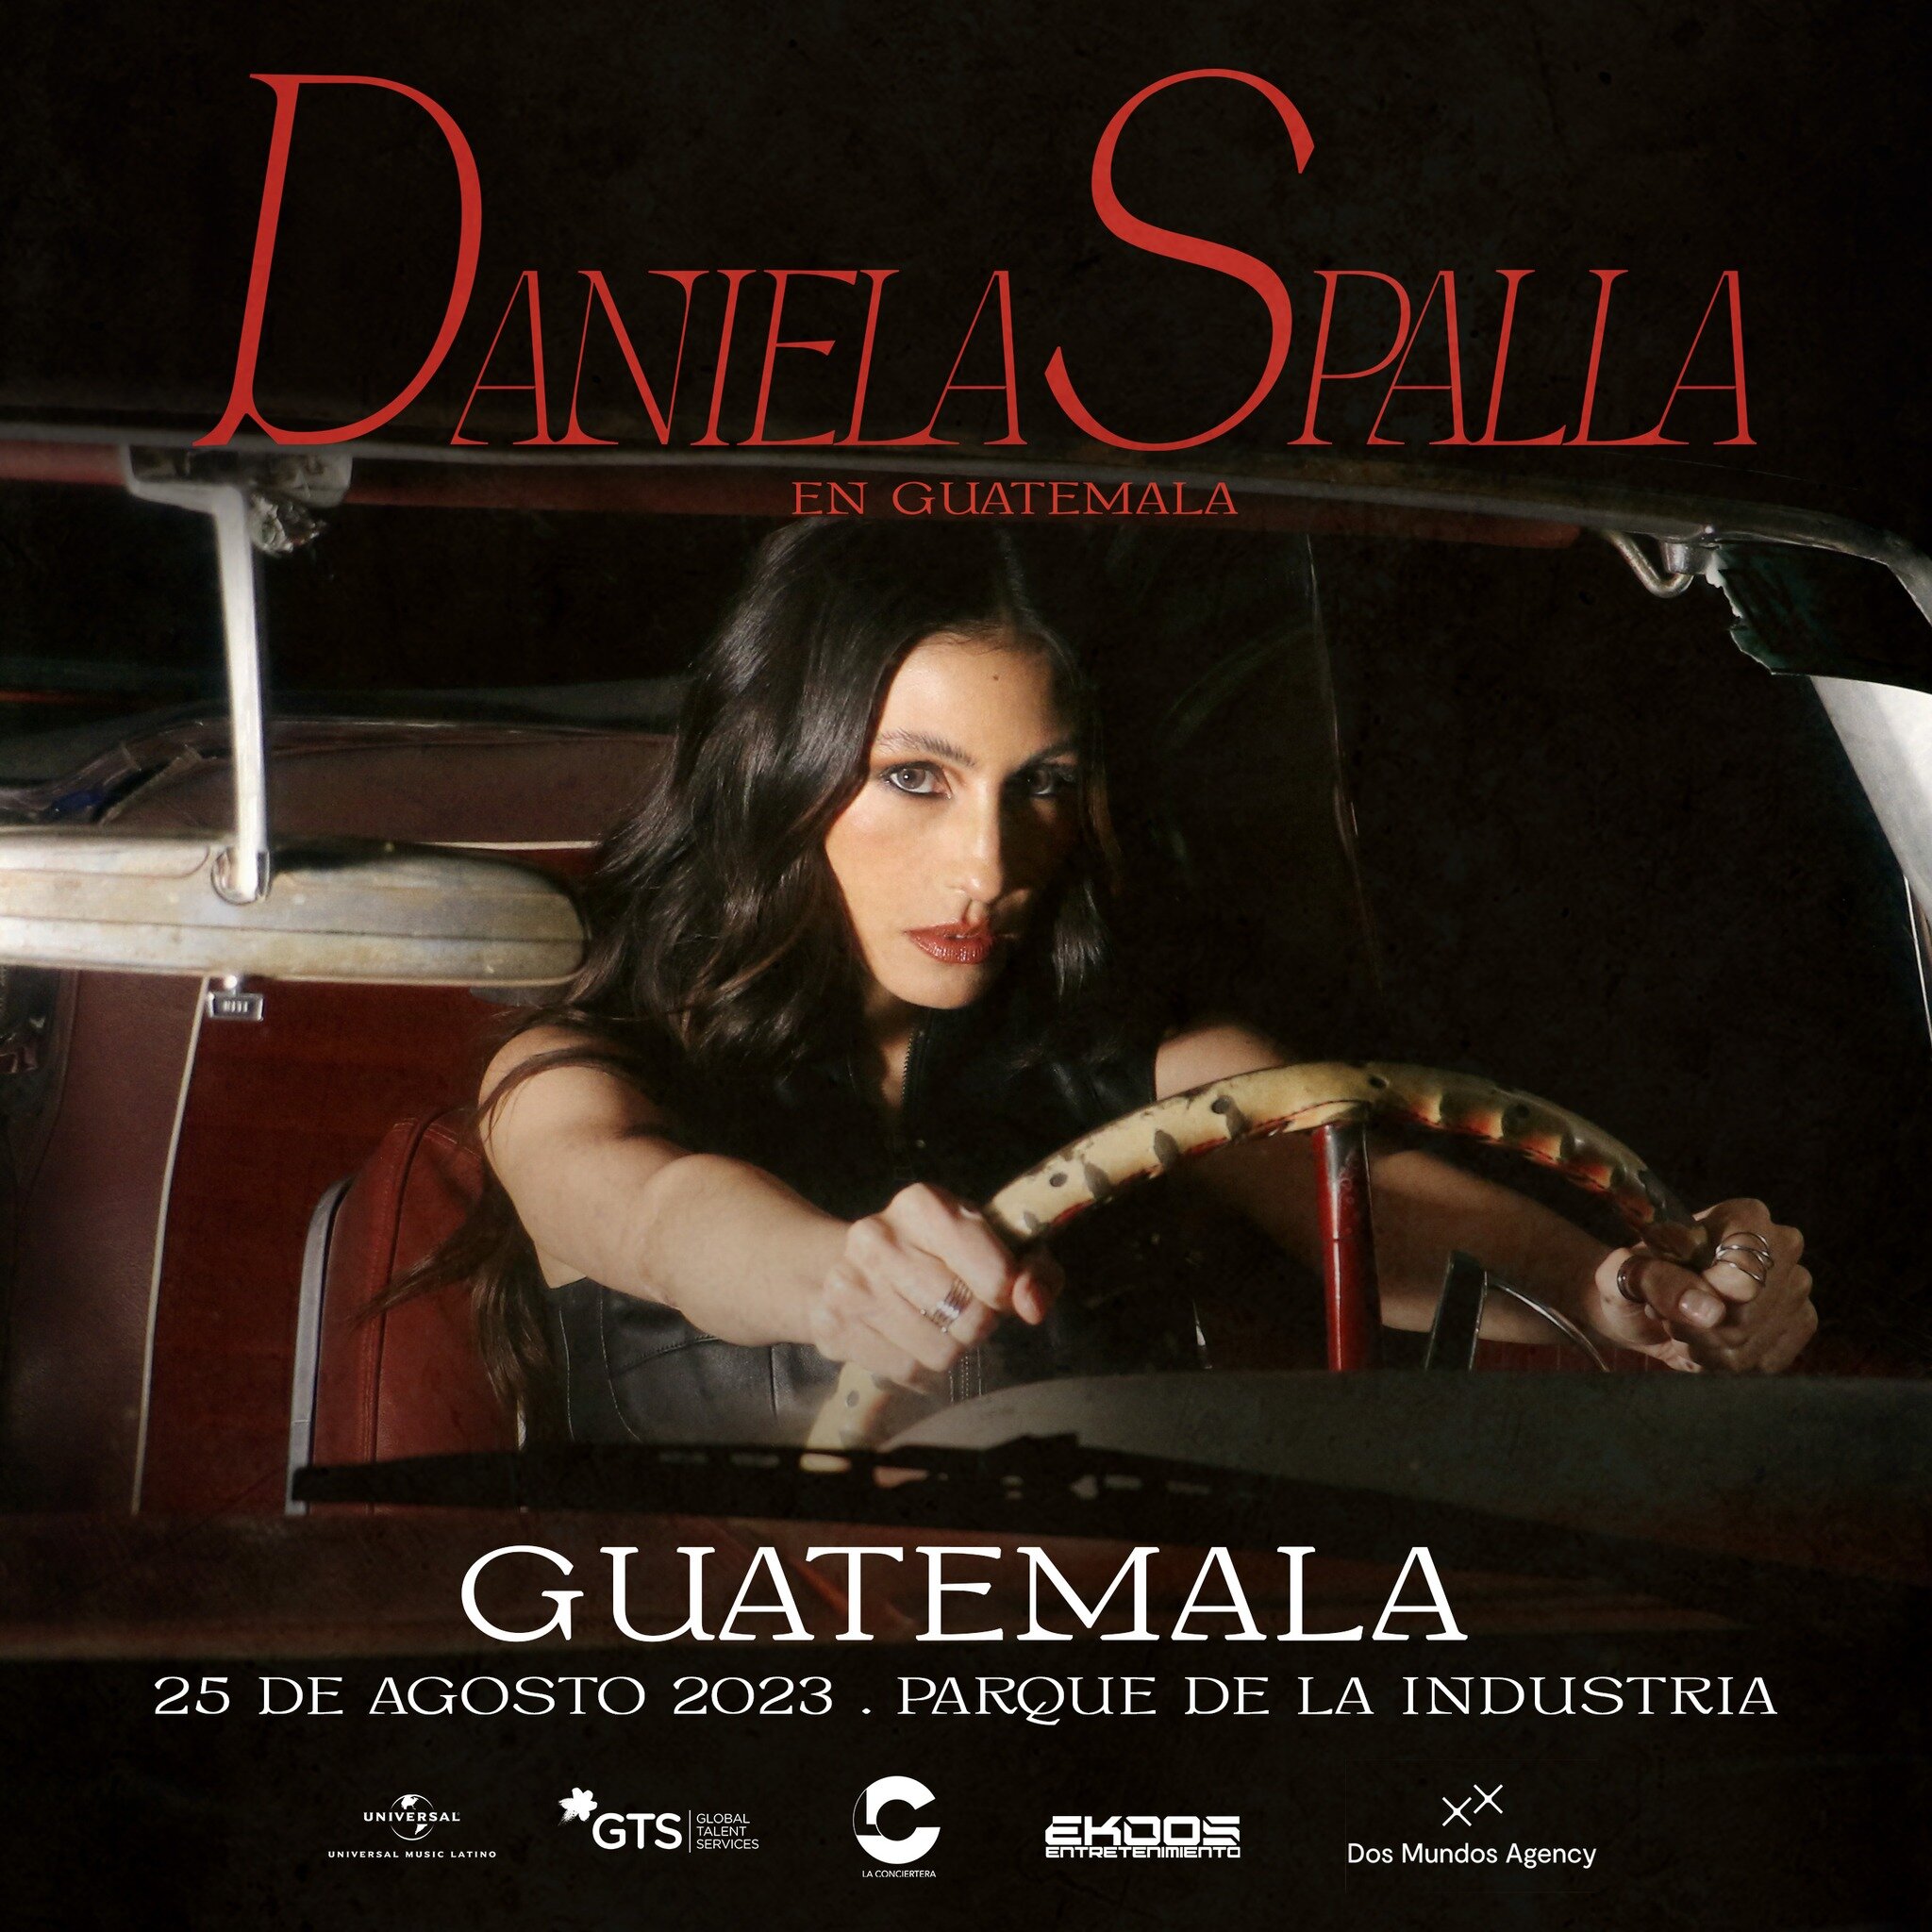 Amigos de #Guatemala estamos listos para cantar a todo pulm&oacute;n las canciones de Daniela Spalla en vivo?? ❤️&zwj;🩹❤️&zwj;🩹

No te lo puedes perder
⭐️ @danielaspalla 
🗒️ 25 de AGOSTO
📍Parque de la Industria #Guatemala

#rock #alternativa #con